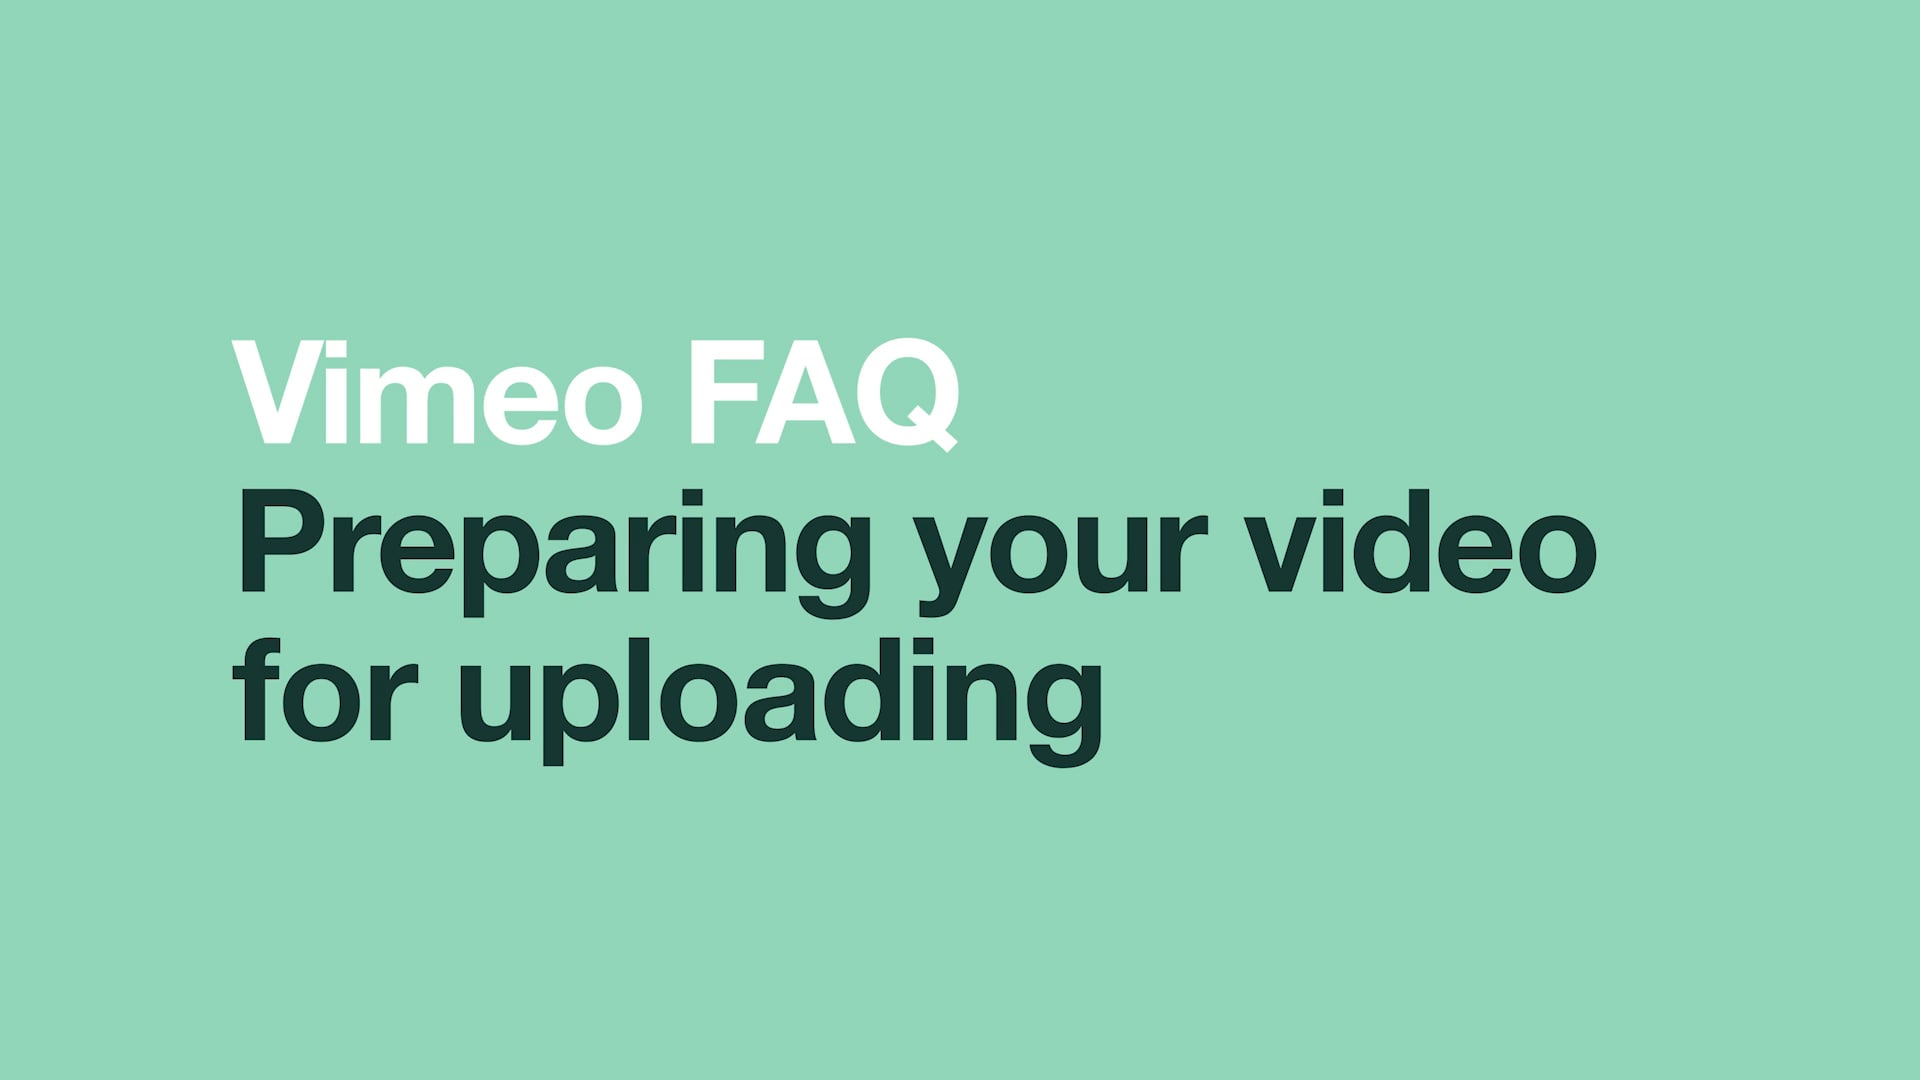 Preparing your video for uploading on Vimeo